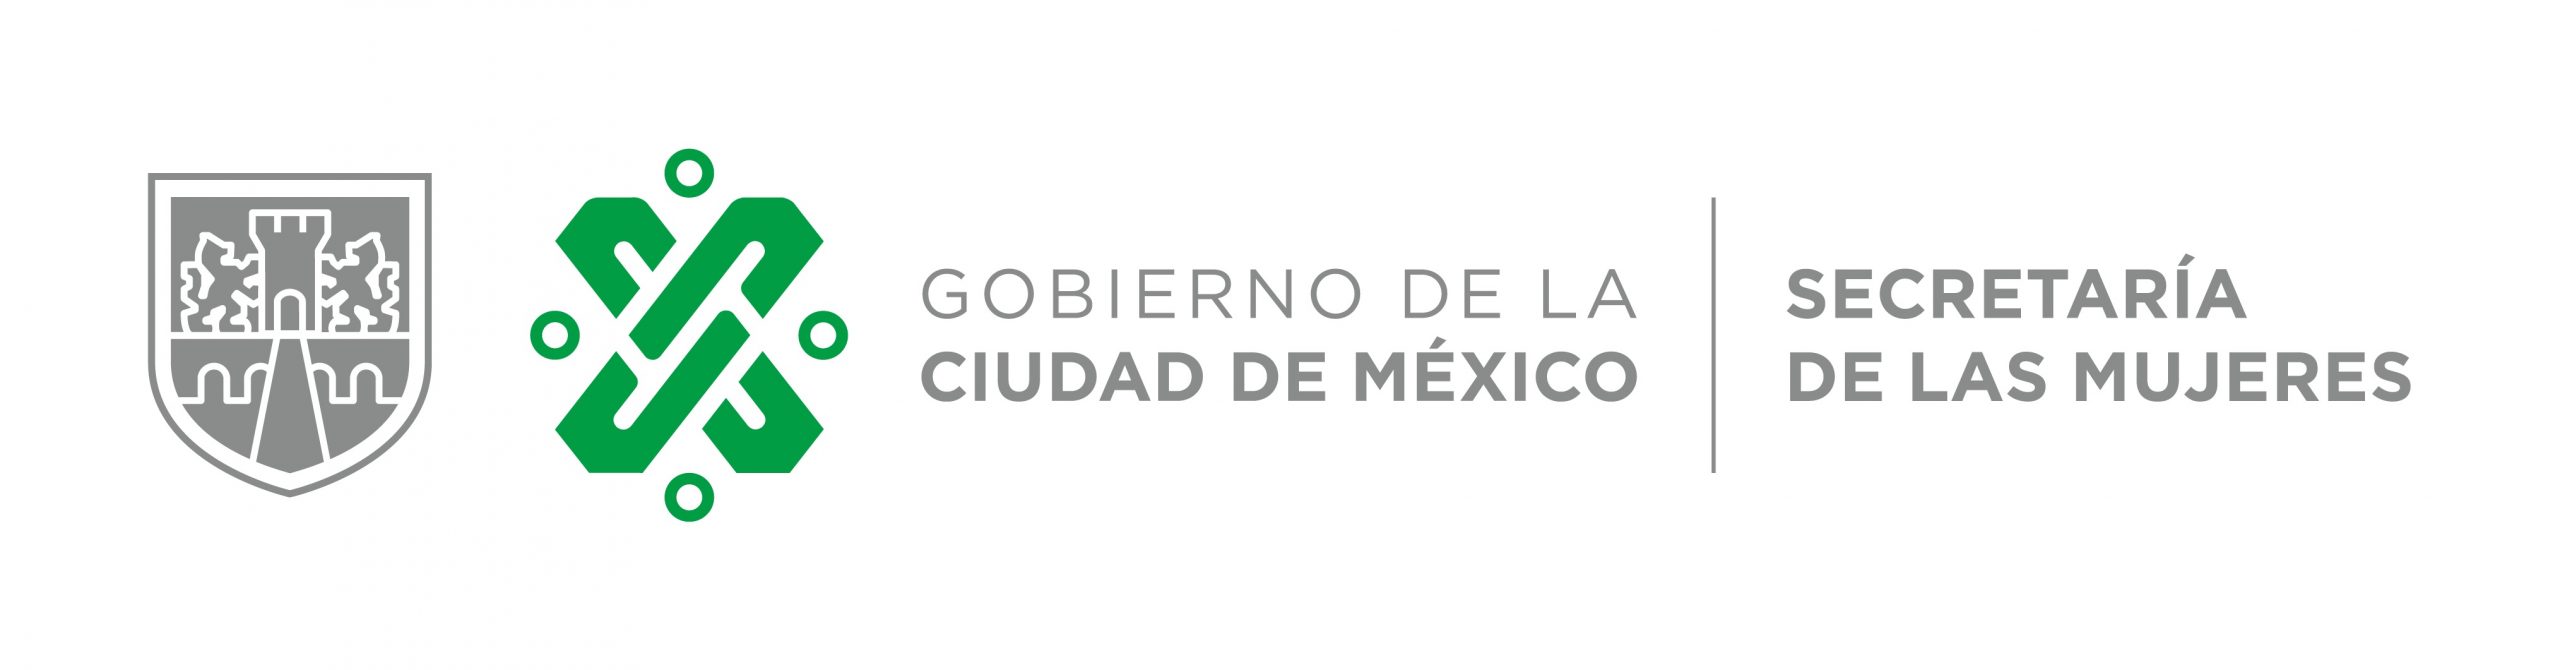 Gobierno de la Ciudad de México - Secretaría de las Mujeres